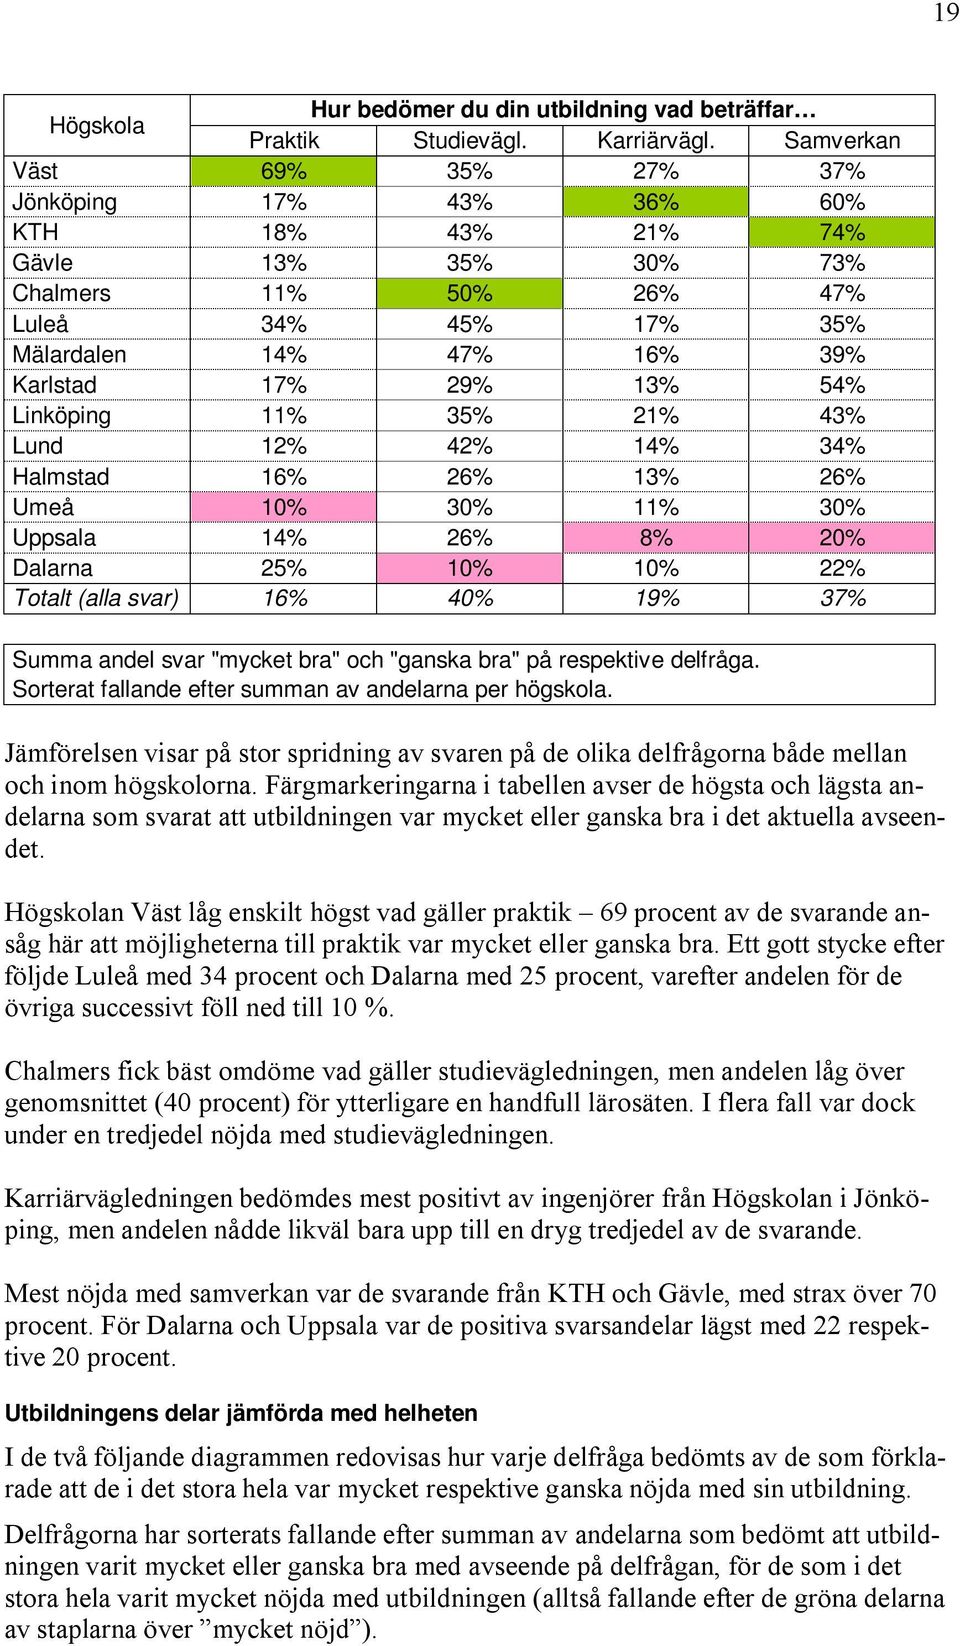 Linköping 11% 35% 21% 43% Lund 12% 42% 14% 34% Halmstad 16% 26% 13% 26% Umeå 10% 30% 11% 30% Uppsala 14% 26% 8% 20% Dalarna 25% 10% 10% 22% Totalt (alla svar) 16% 40% 19% 37% Summa andel svar "mycket